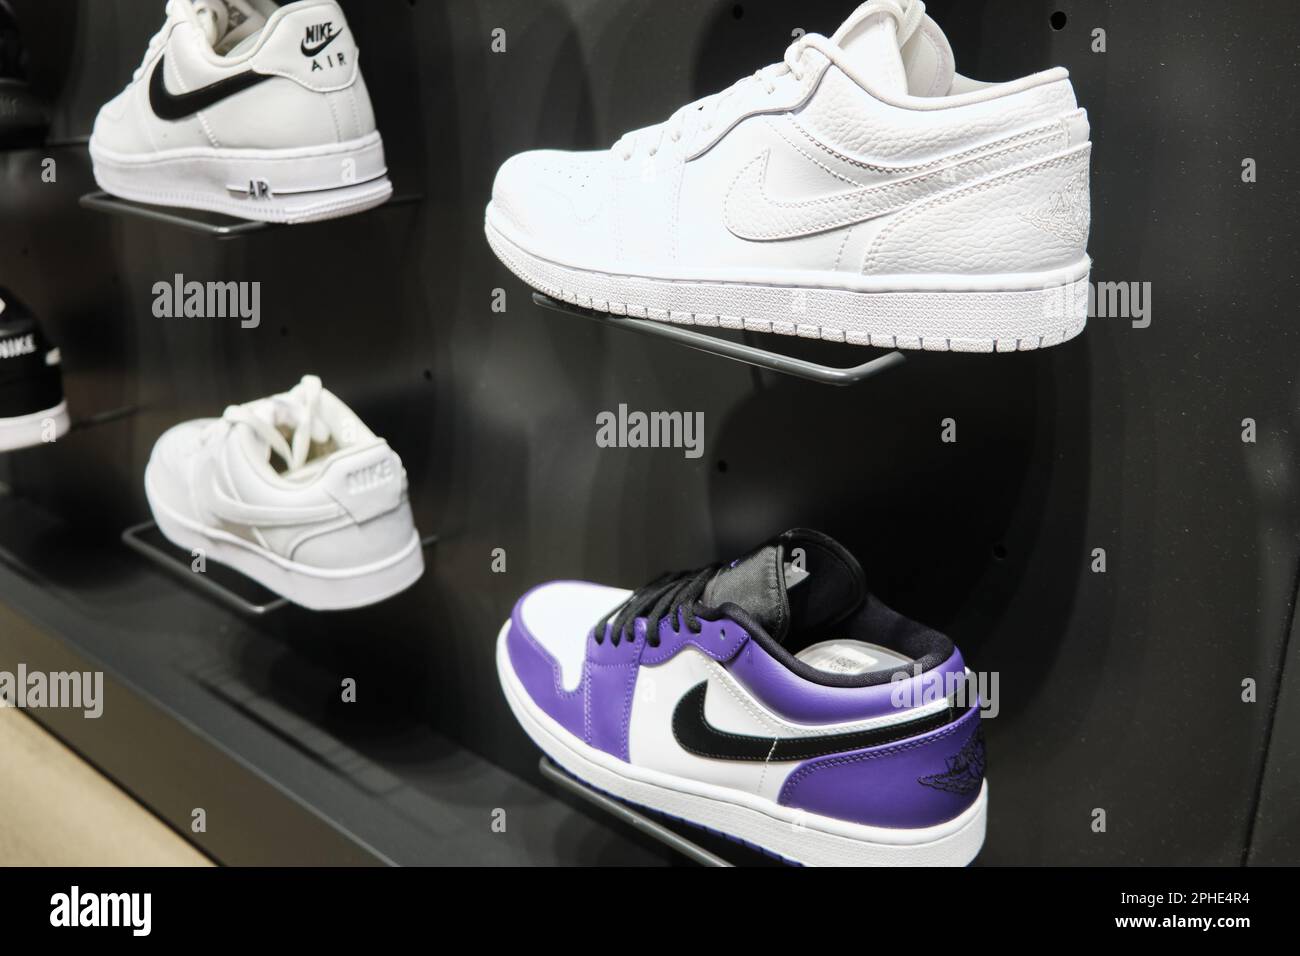 Nike Air Jordan 1 and Nike Air Force 1 sneakers at retail store display.  Mersin, Turkey - November 2020 Stock Photo - Alamy